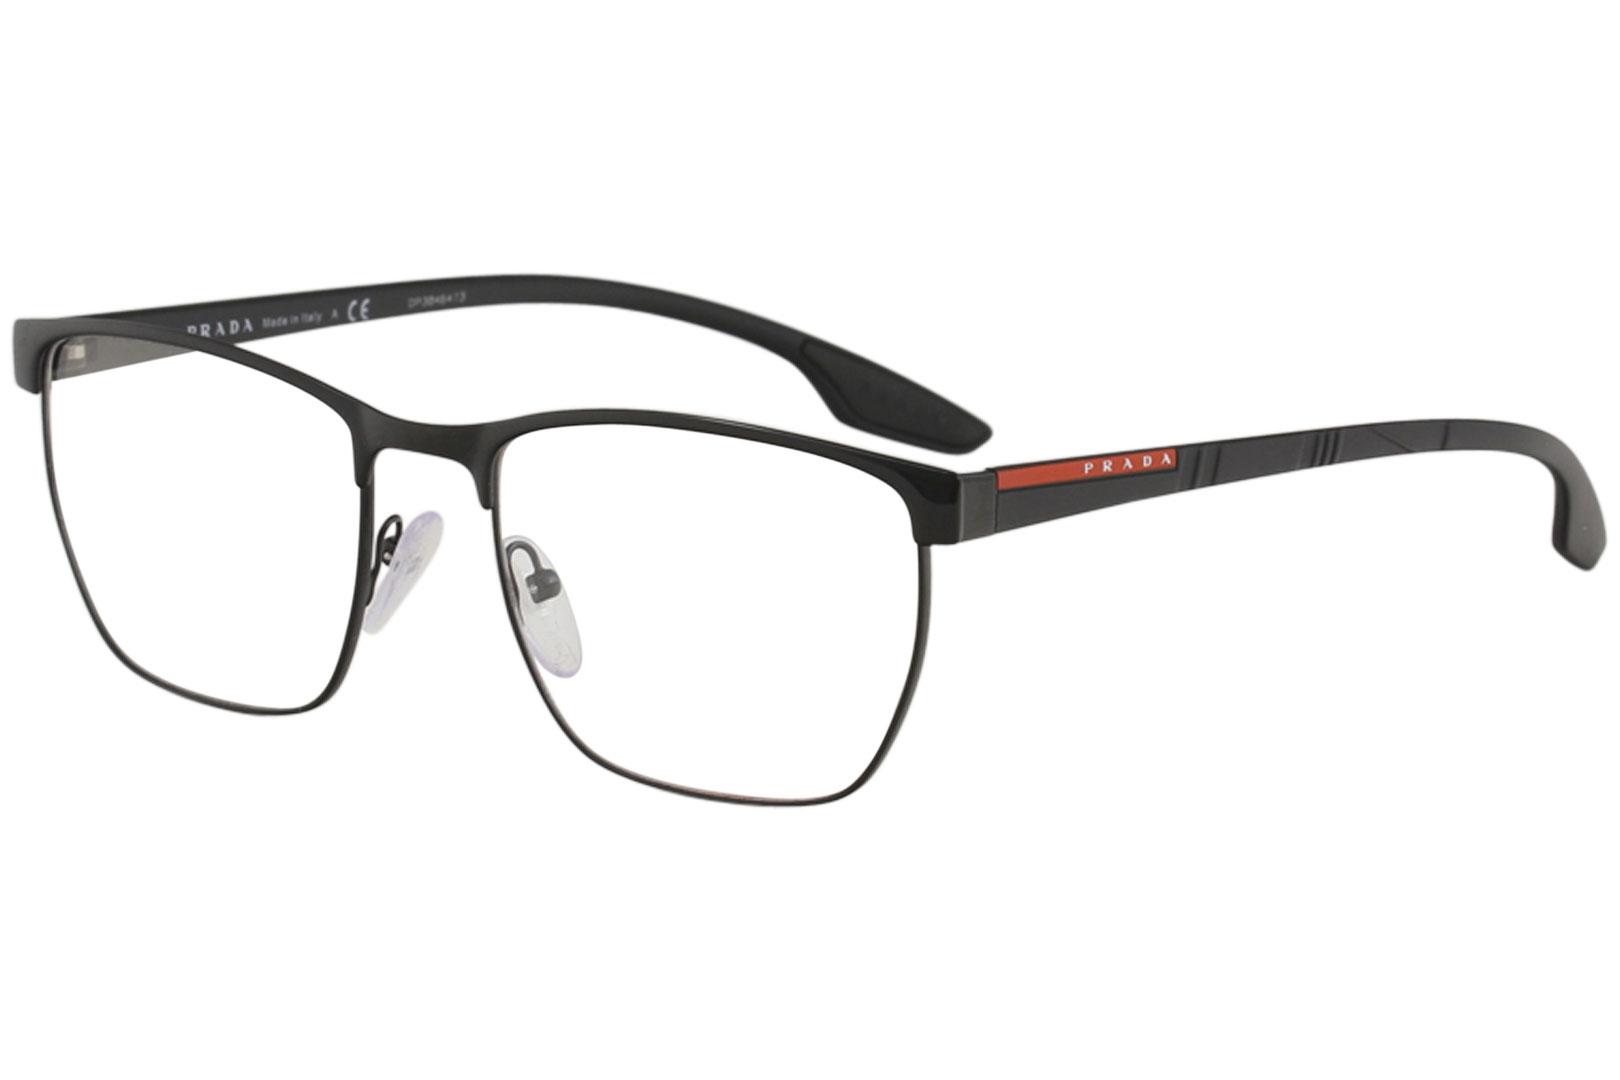 prada men's eyeglasses frames, OFF 71%,Buy!